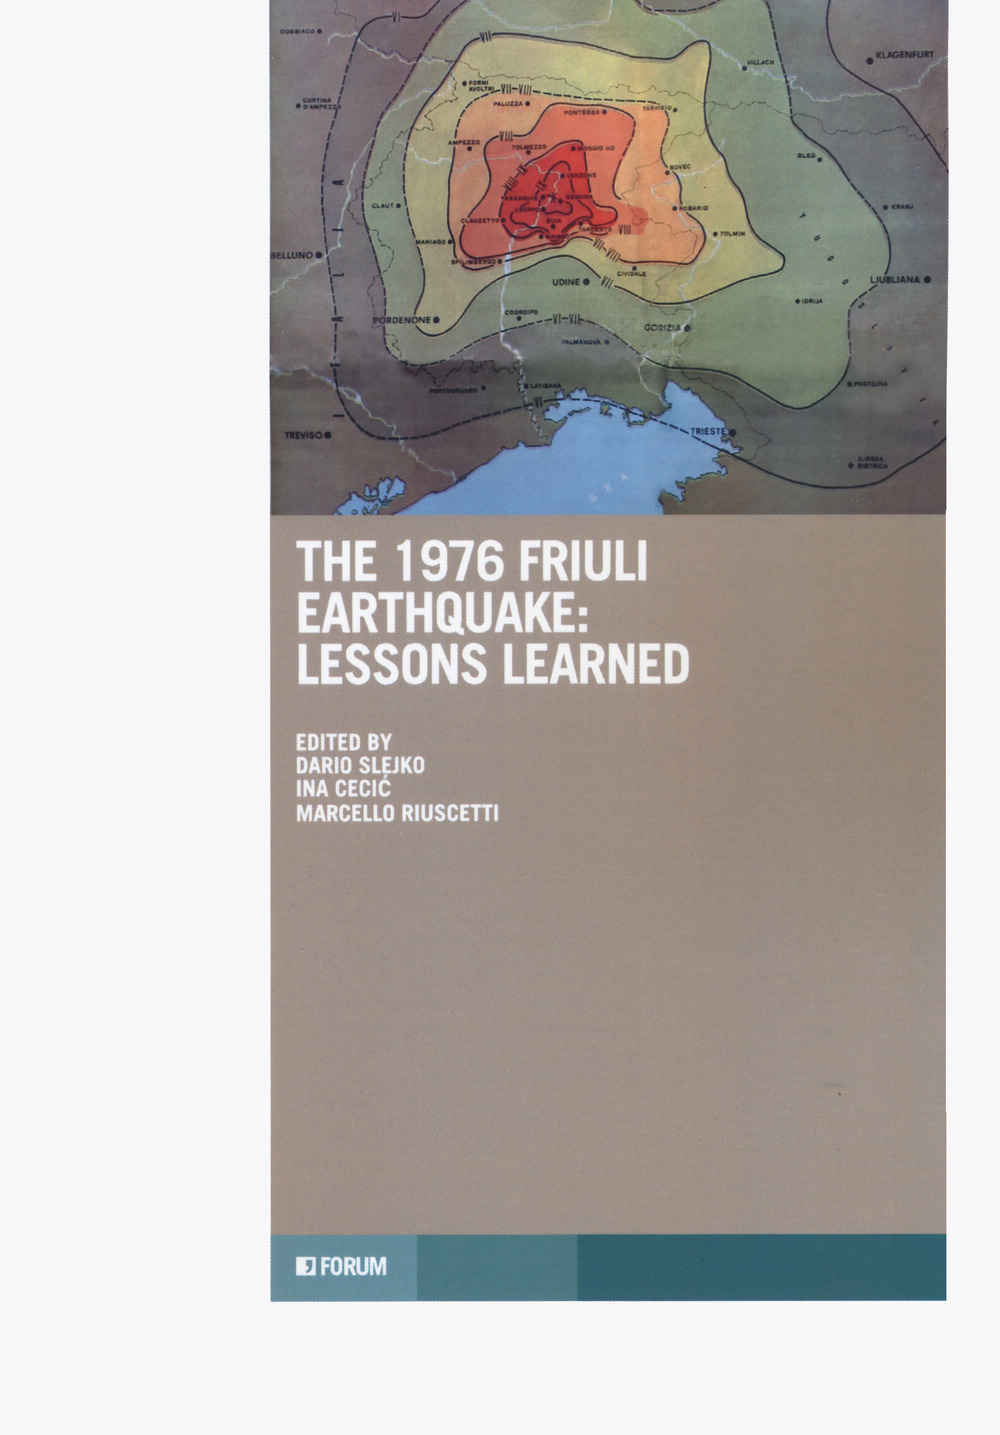 Libri 1976 Friuli Earthquake: Lessons Learned (The) NUOVO SIGILLATO, EDIZIONE DEL 28/11/2019 SUBITO DISPONIBILE